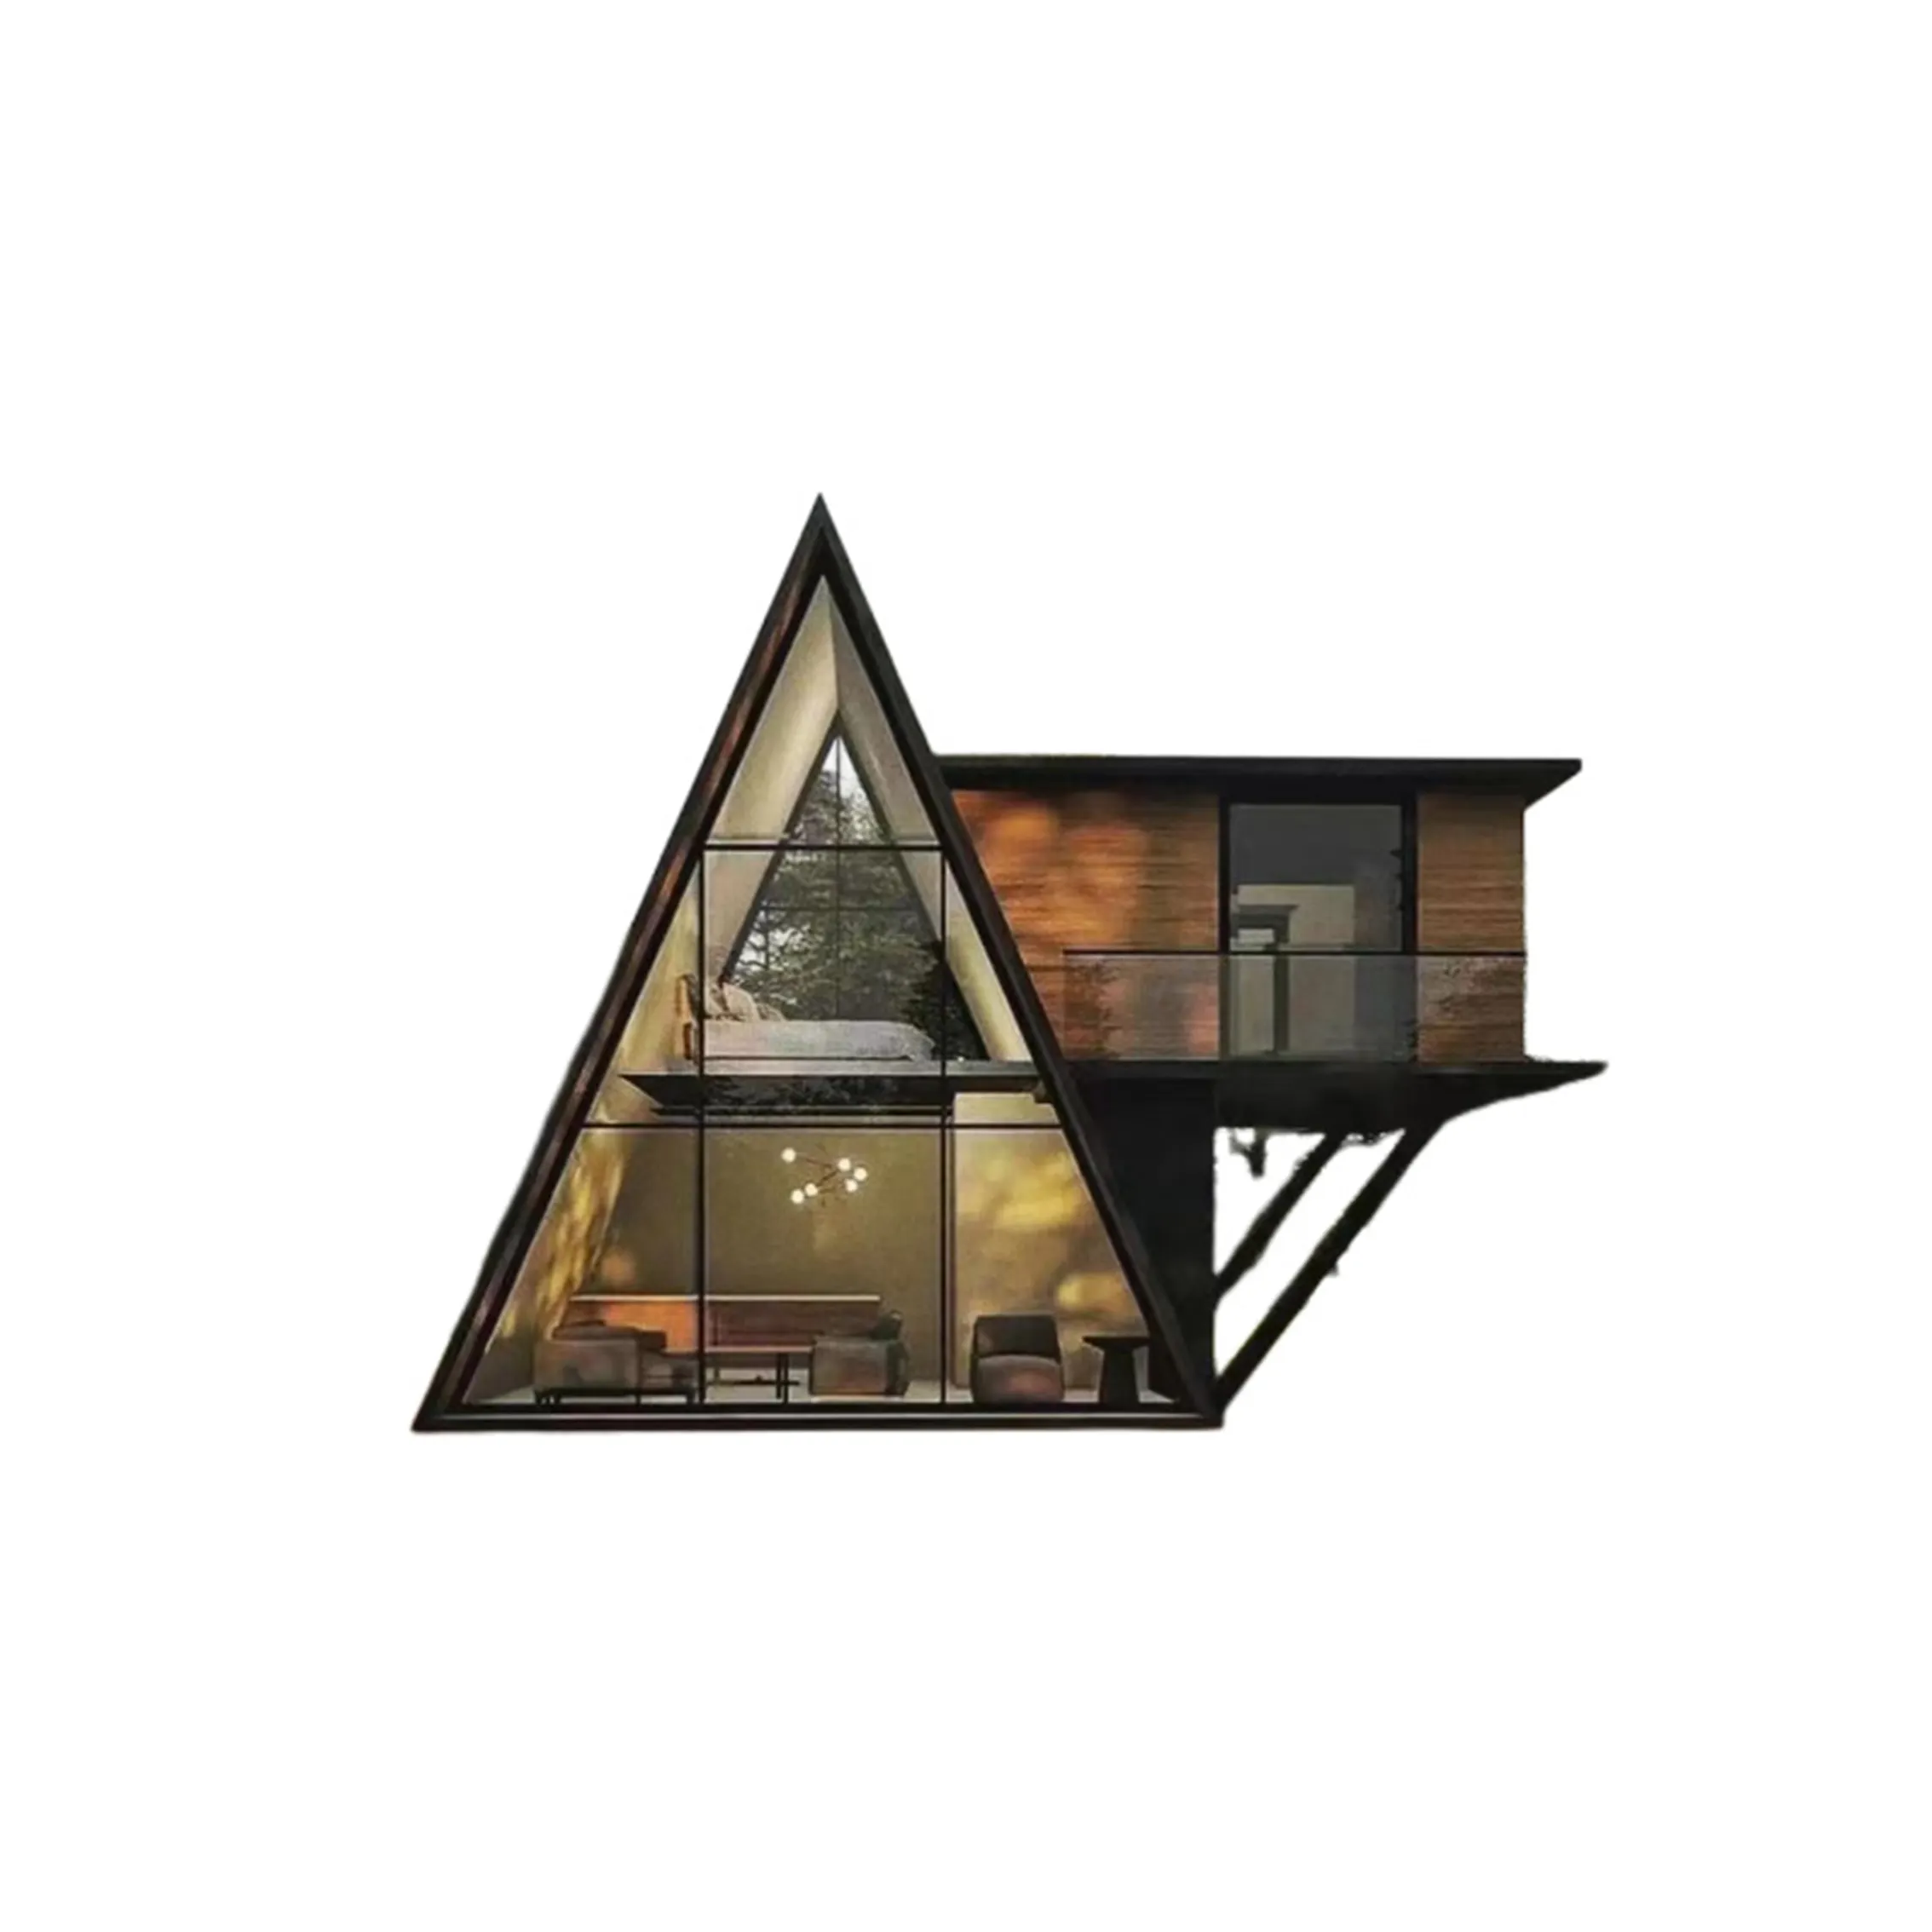 Kit de cabane en rondins de cabine triangulaire à assemblage rapide modulaire de haute qualité Cabine préfabriquée moderne